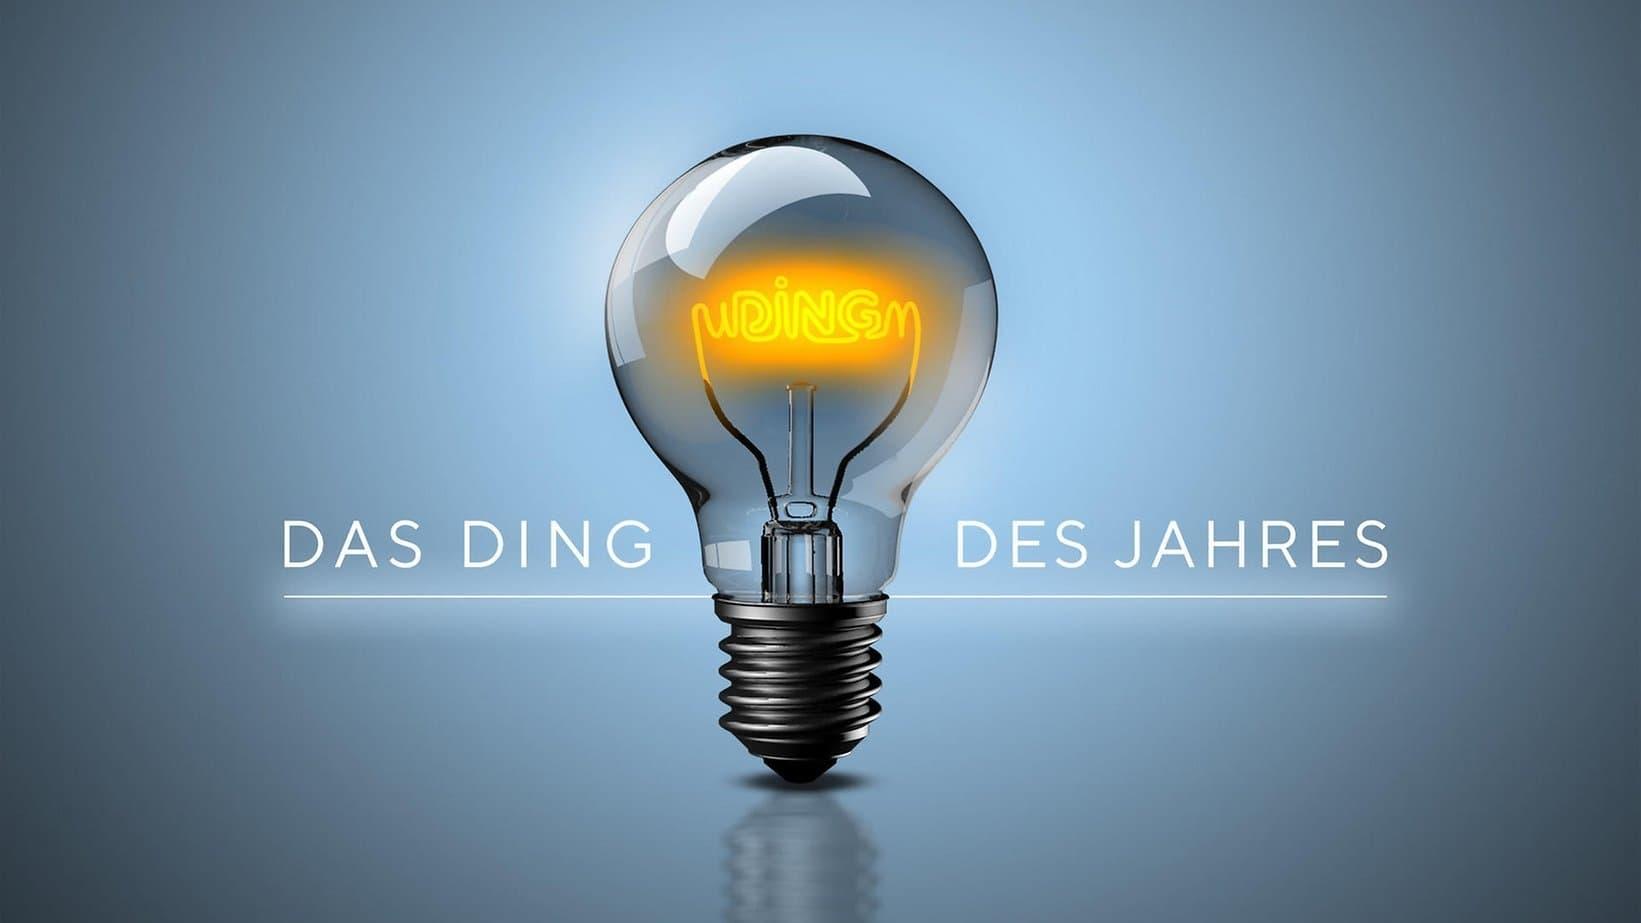 Hans-Jürgen Moog backdrop